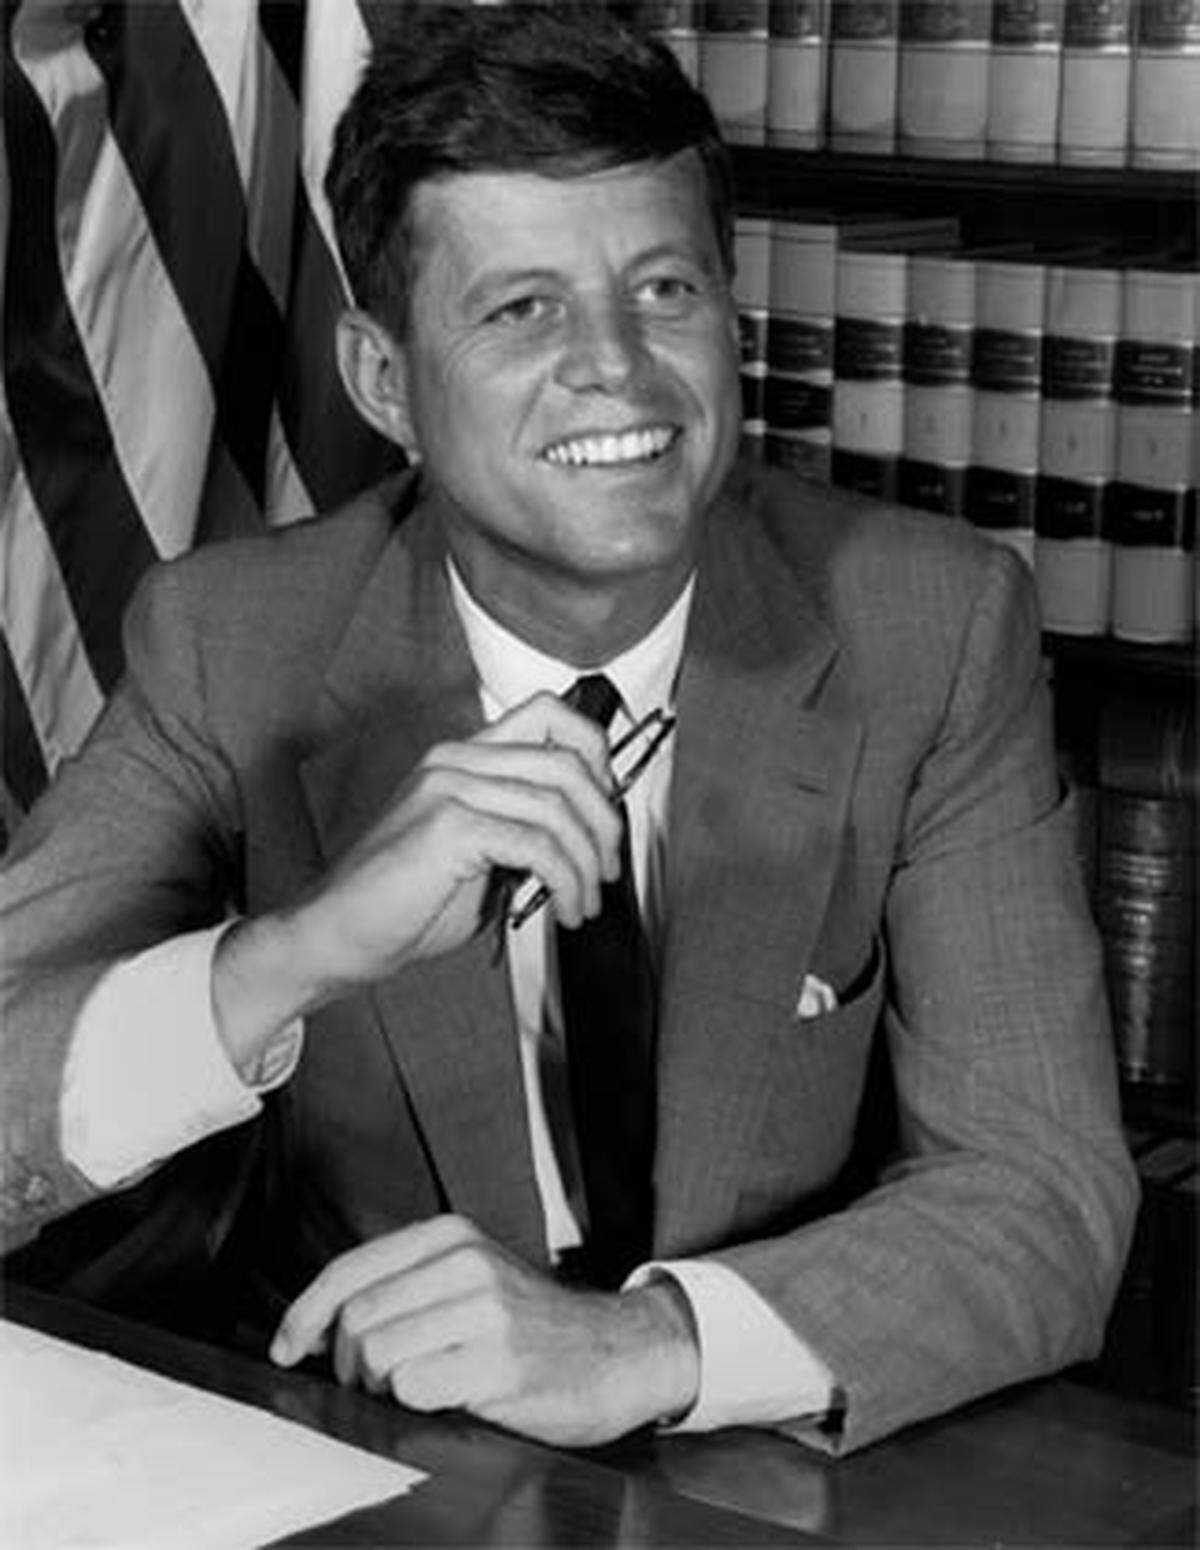 Als "der" sexy Politiker schlechthin gilt wohl nach wie vor John F. Kennedy. Dem 1963 ermordeten US-Präsidenten wurden unzählige Affären nachgesagt - unter anderem auch mit Marilyn Monroe.